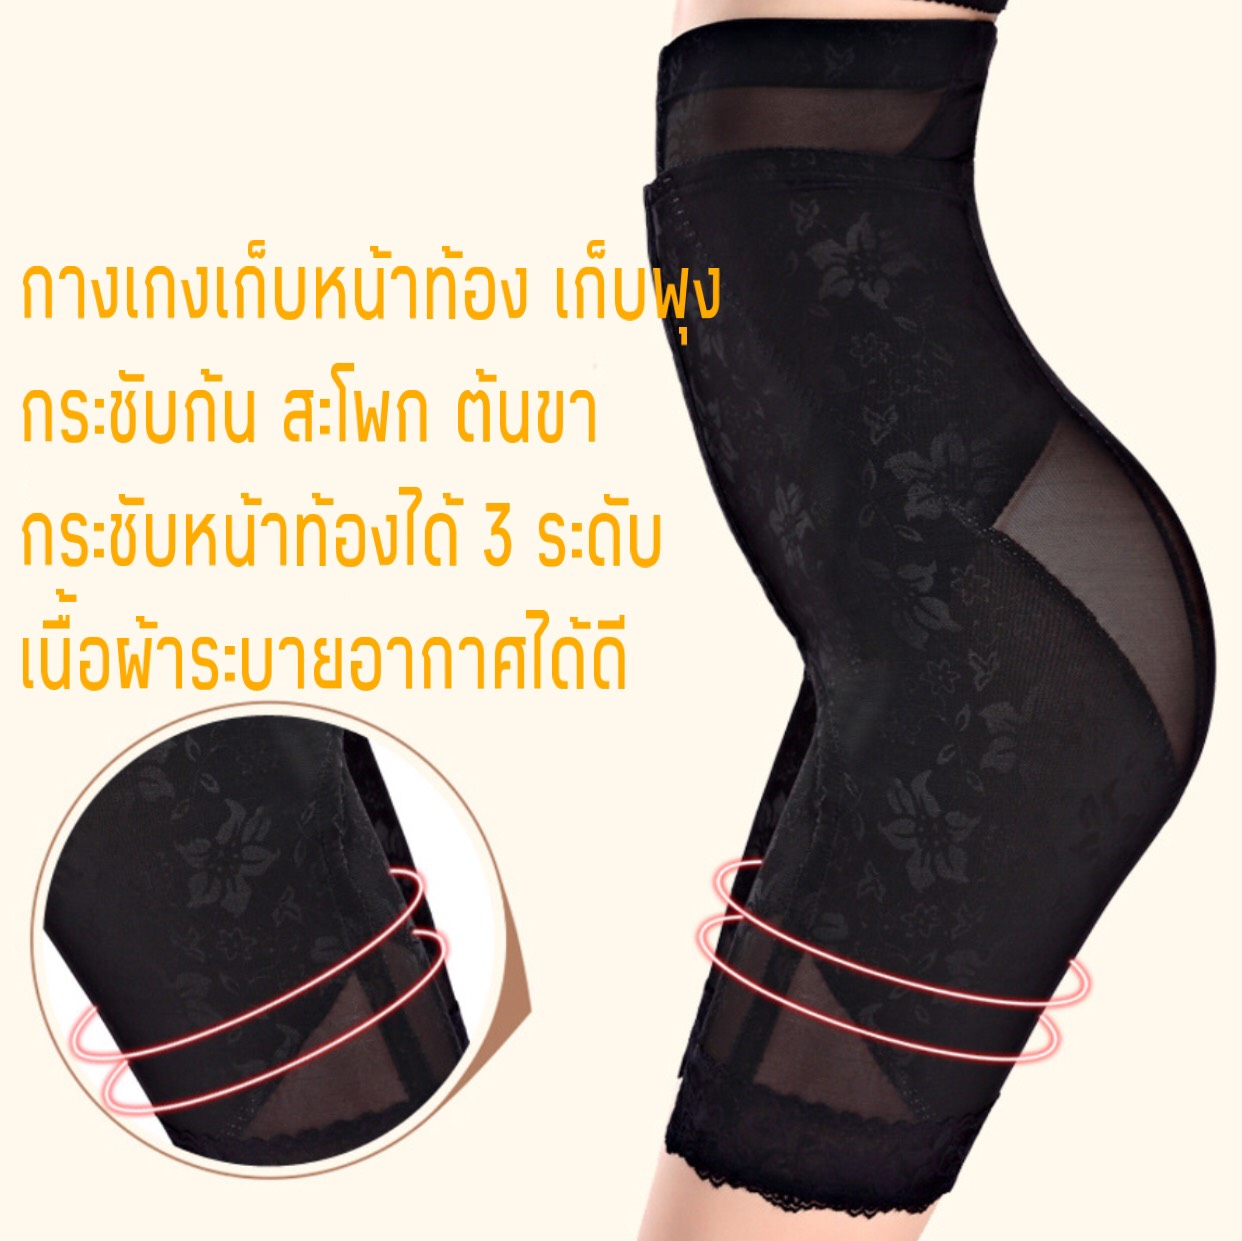 กางเกงกระชับเอว สะโพก ต้นขา รุ่นเปิดก้นได้ ( มีไซส์ M-3XL มีสีดำ เนื้อ เทา ) พิเศษเพิ่มความกระชับด้วยตะขอเสริม 3 ระดับเก็บกระชับได้ดีเยี่ยม เนื้อผ้าคุณภาพพรีเมี่ยม ชุดกระชับสัดส่วน กางเกงรัดรูป กางเกงสเตย์ กางเกงลดพุง ลดน้ำหนัก ลดหน้าท้อง Body Shaper..1